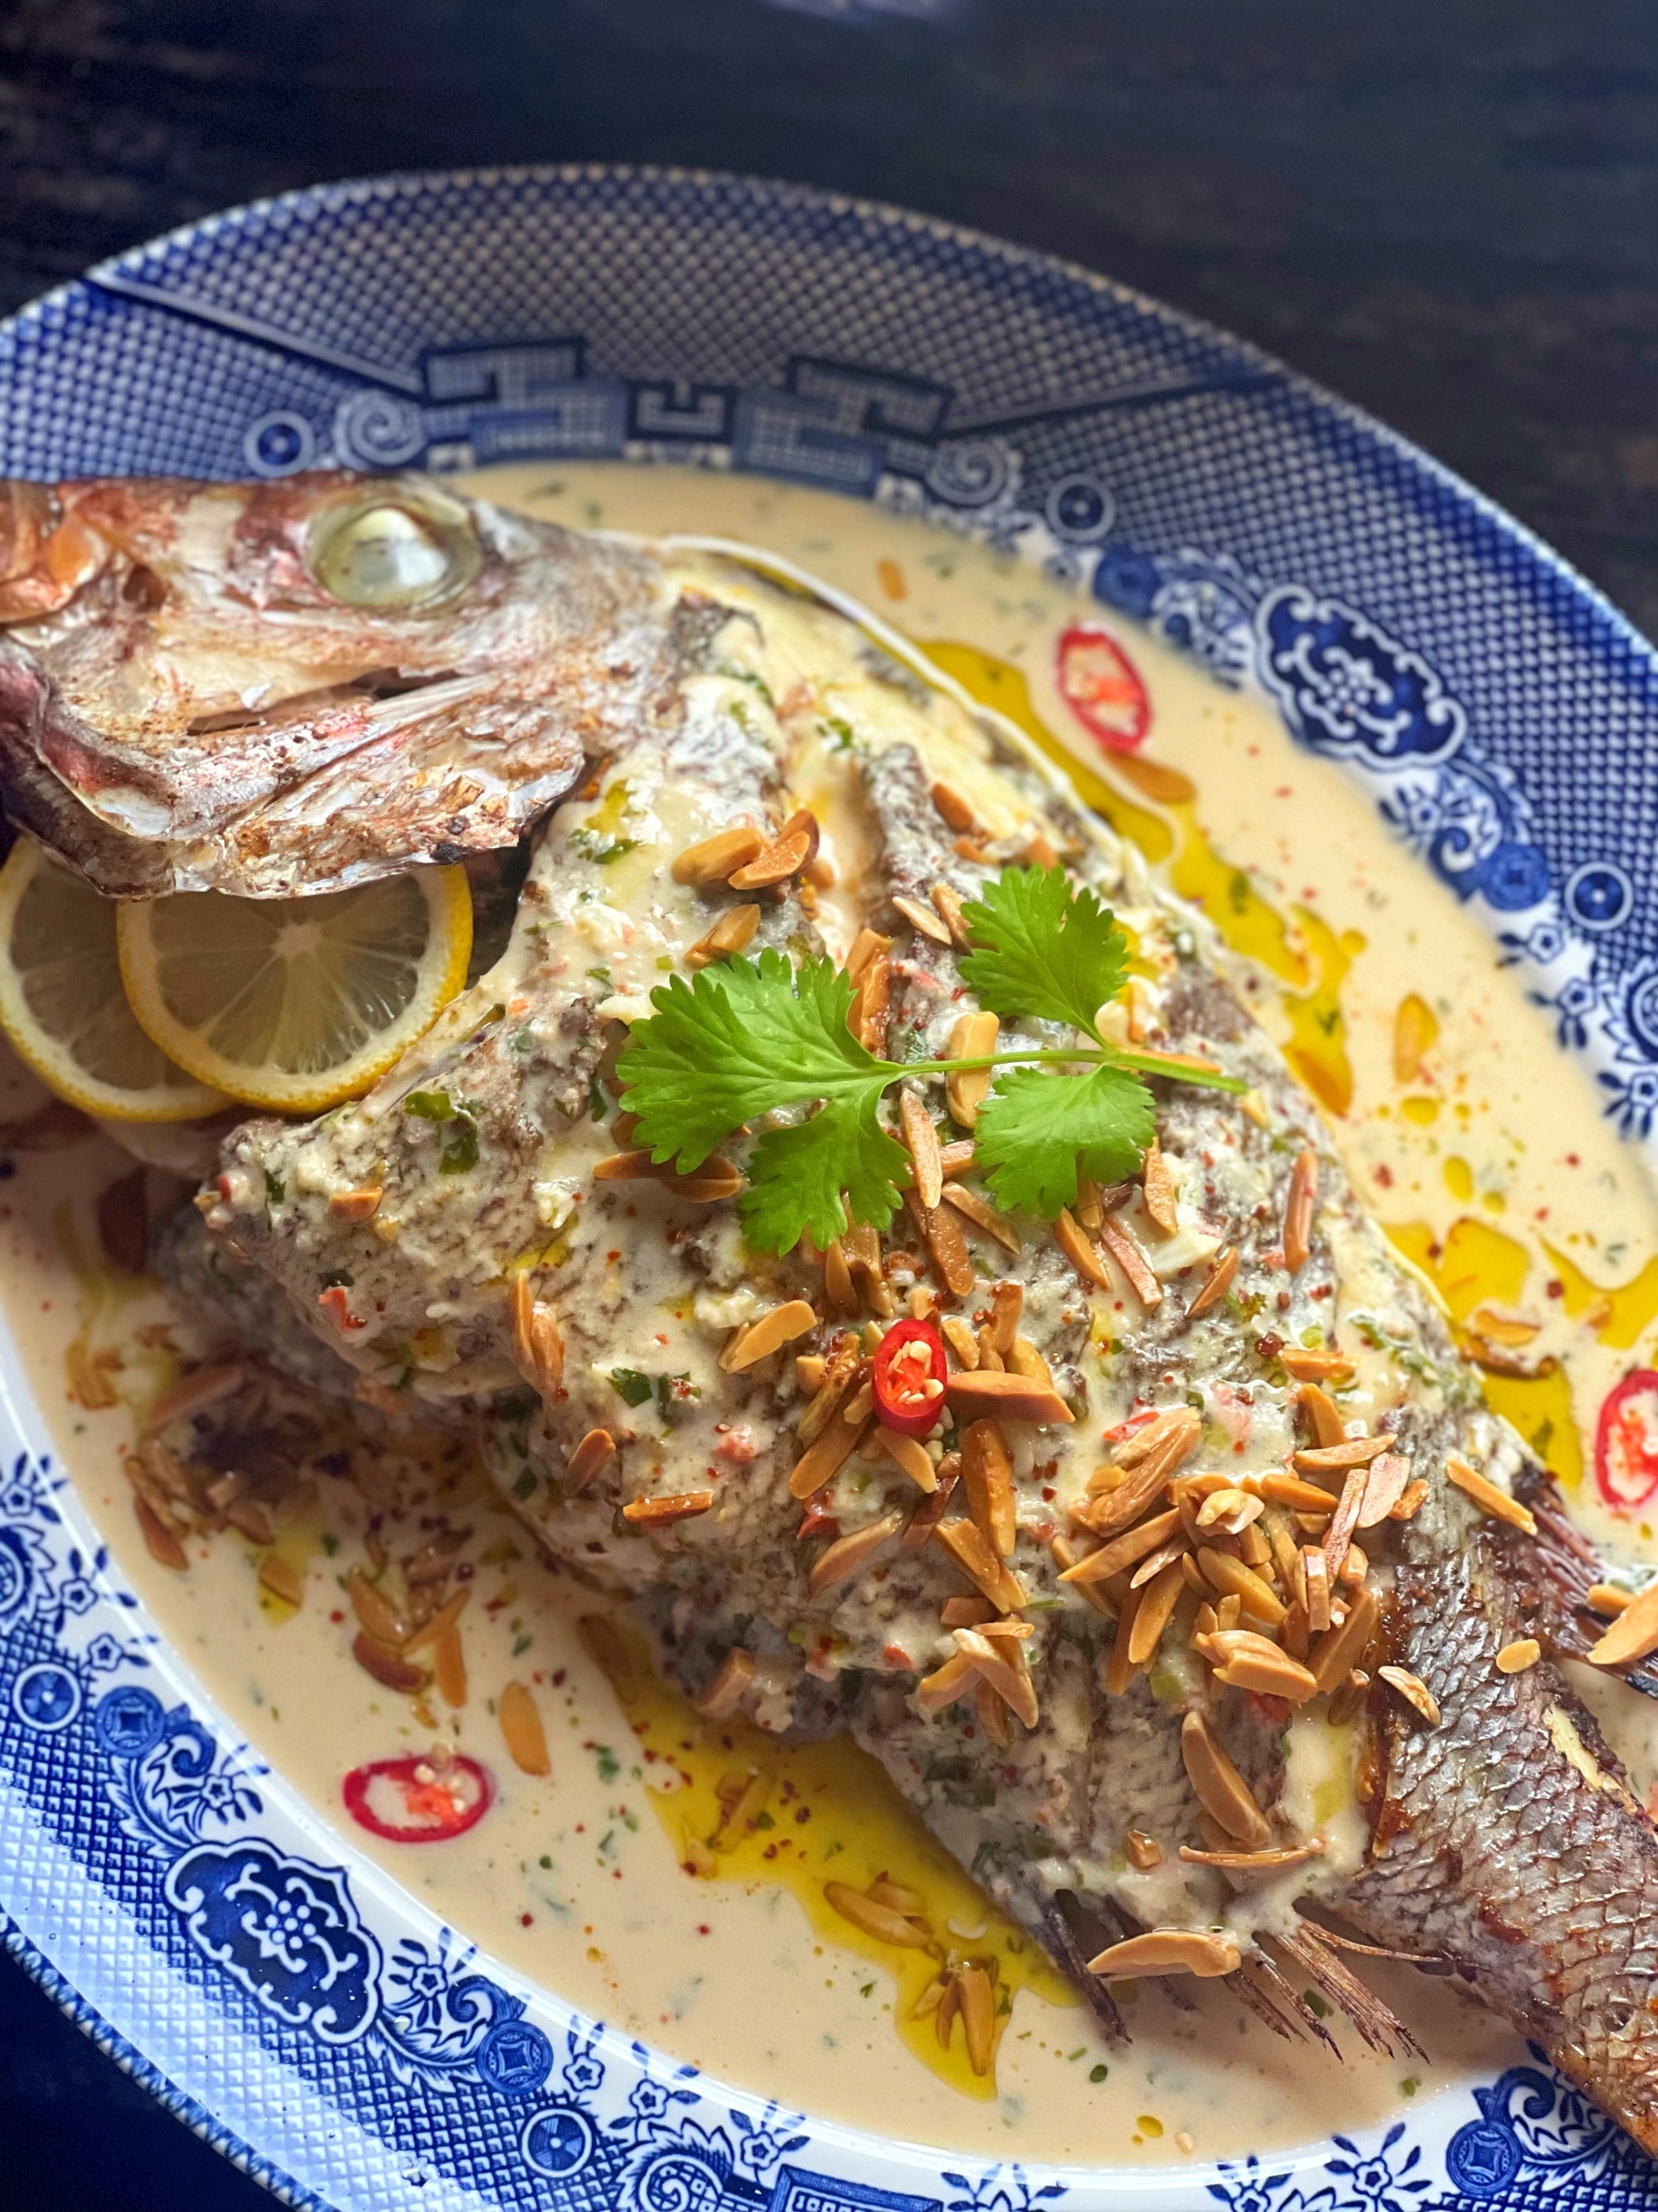 Samki Harra 'Whole Spicy Fish in Tahini'